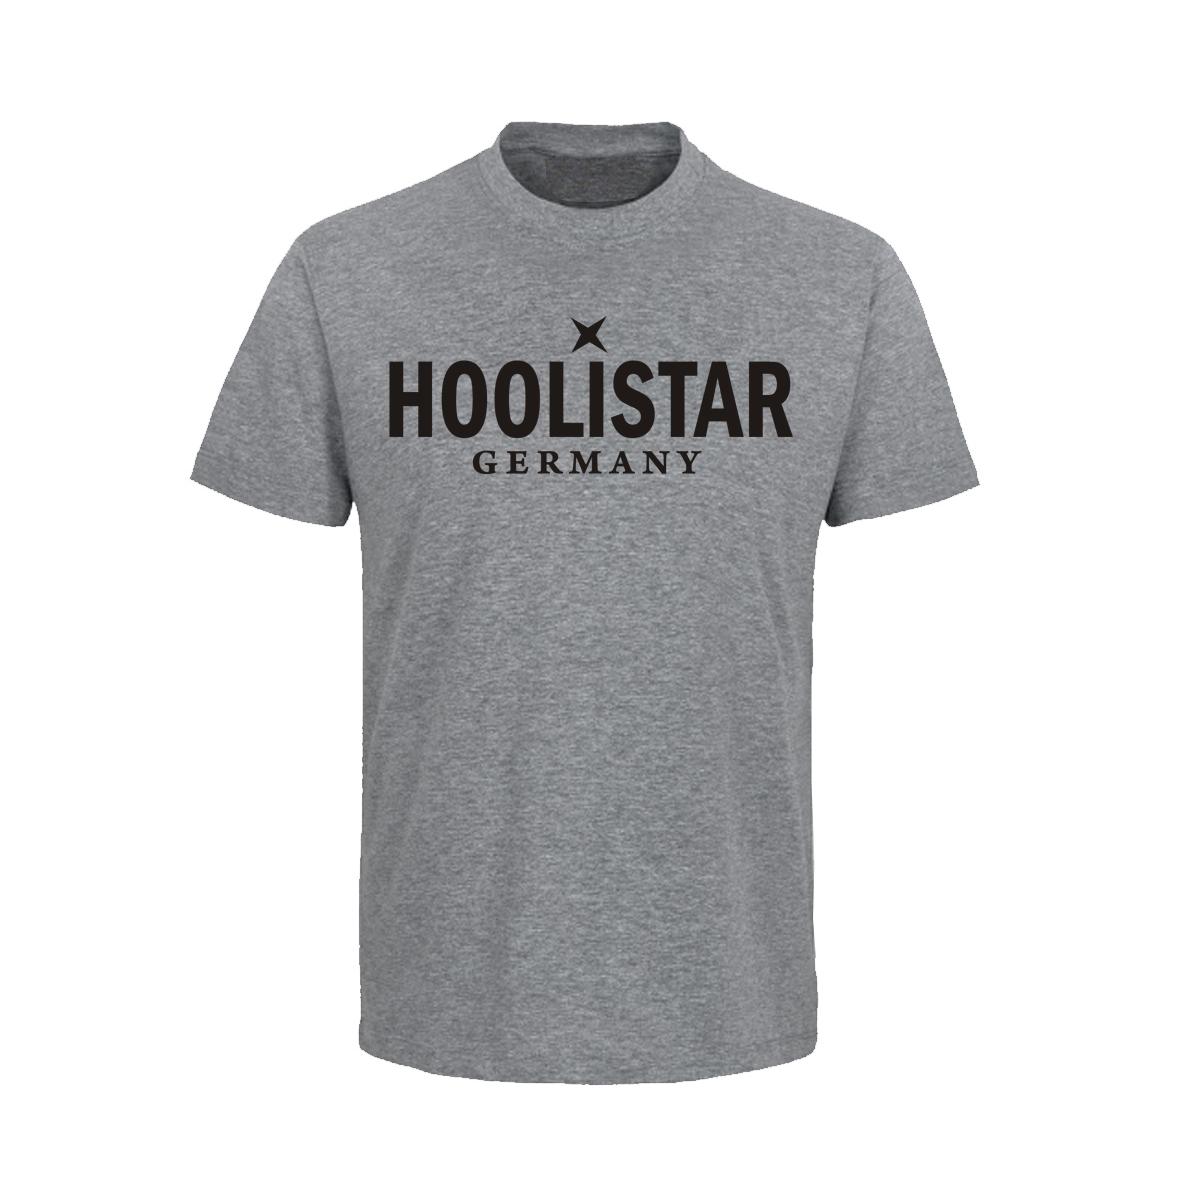 X Hoolistar - Männer T-Shirt - grau meliert